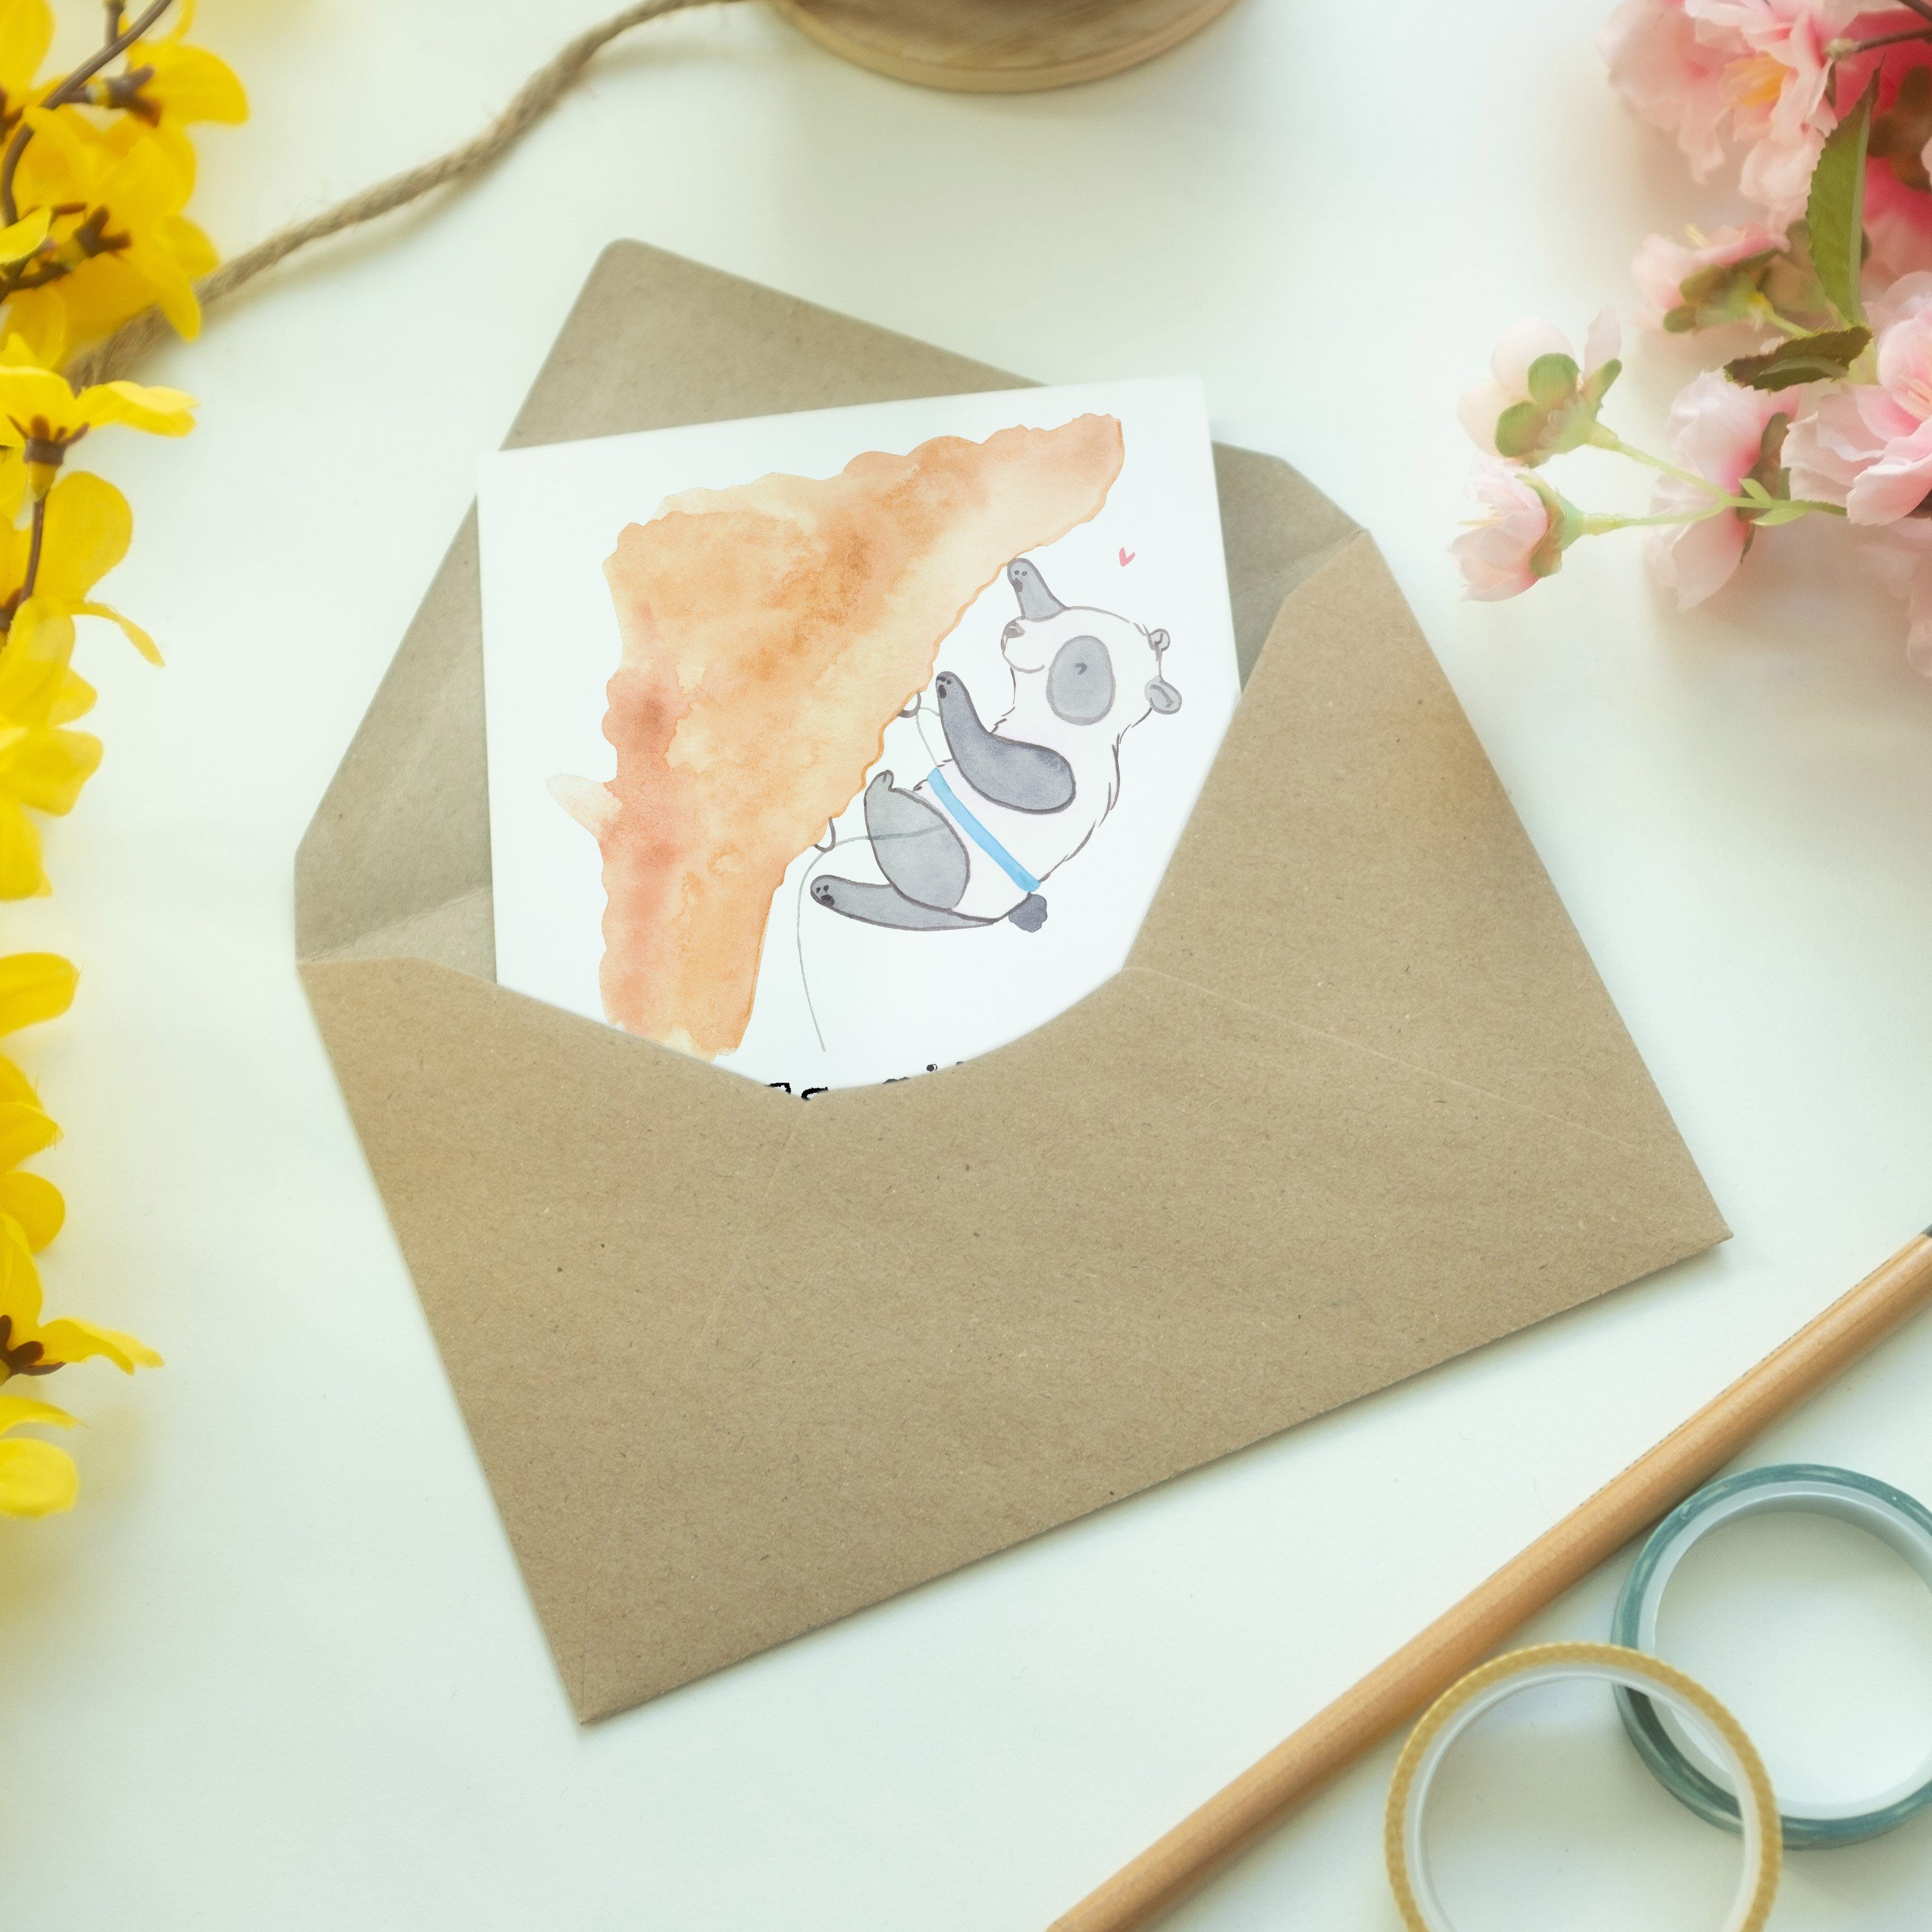 Panda Geschenk, Mr. - - Hochzeitskarte, Tage & Panda Einladungskart Mrs. Weiß Grußkarte Klettern